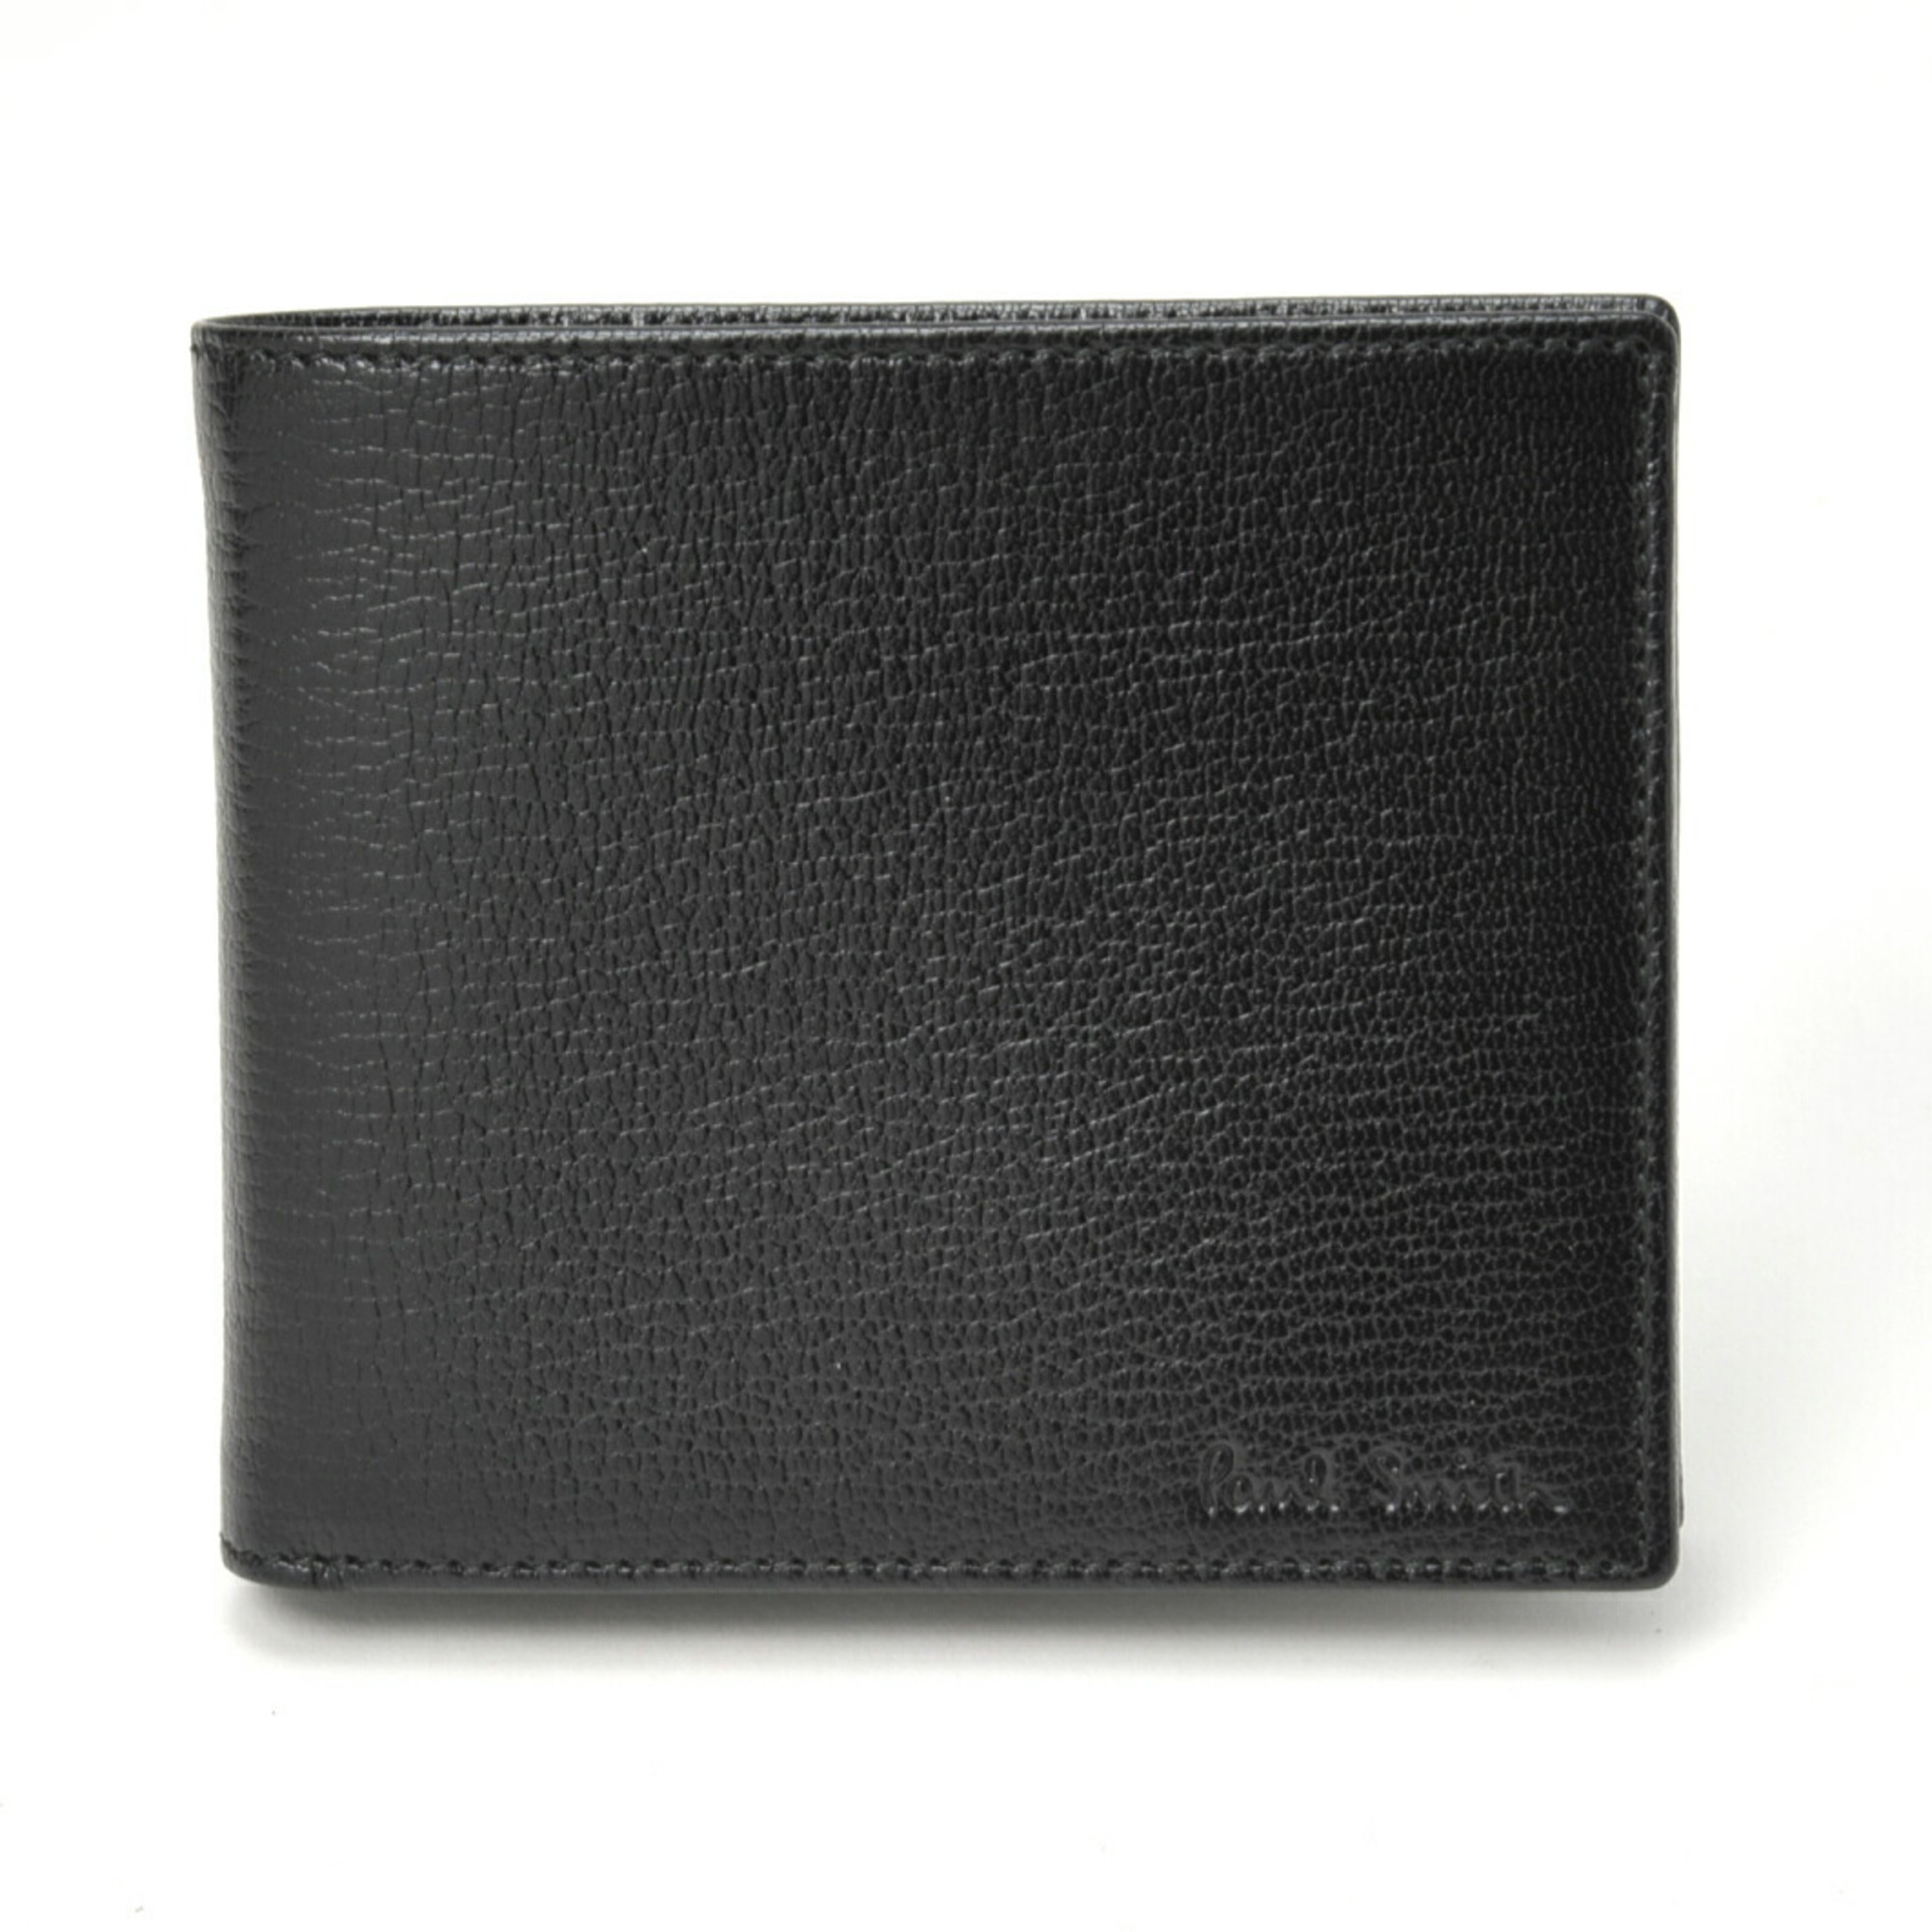 Paul Smith Folding Wallet AKXA/1033 W551 Black